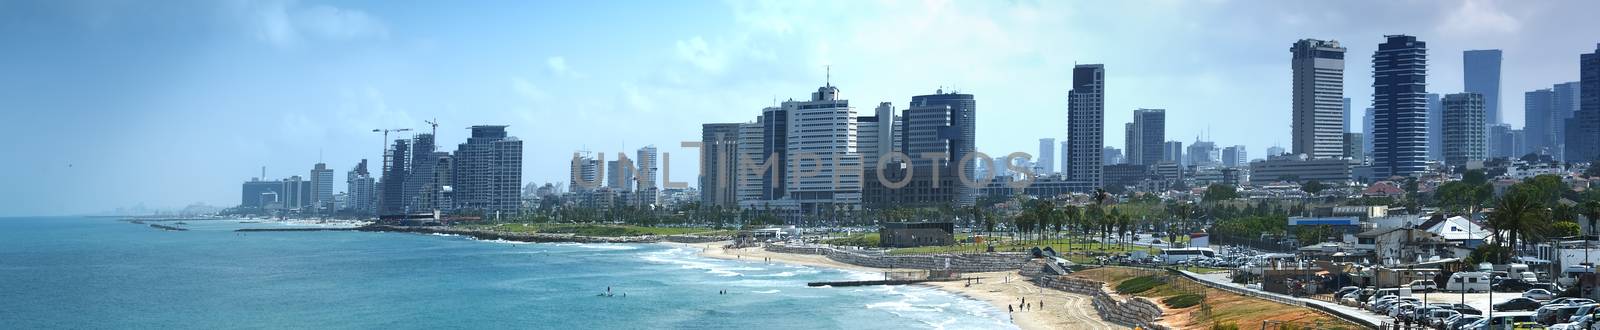 Waterfront views of Tel Aviv by ventdusud